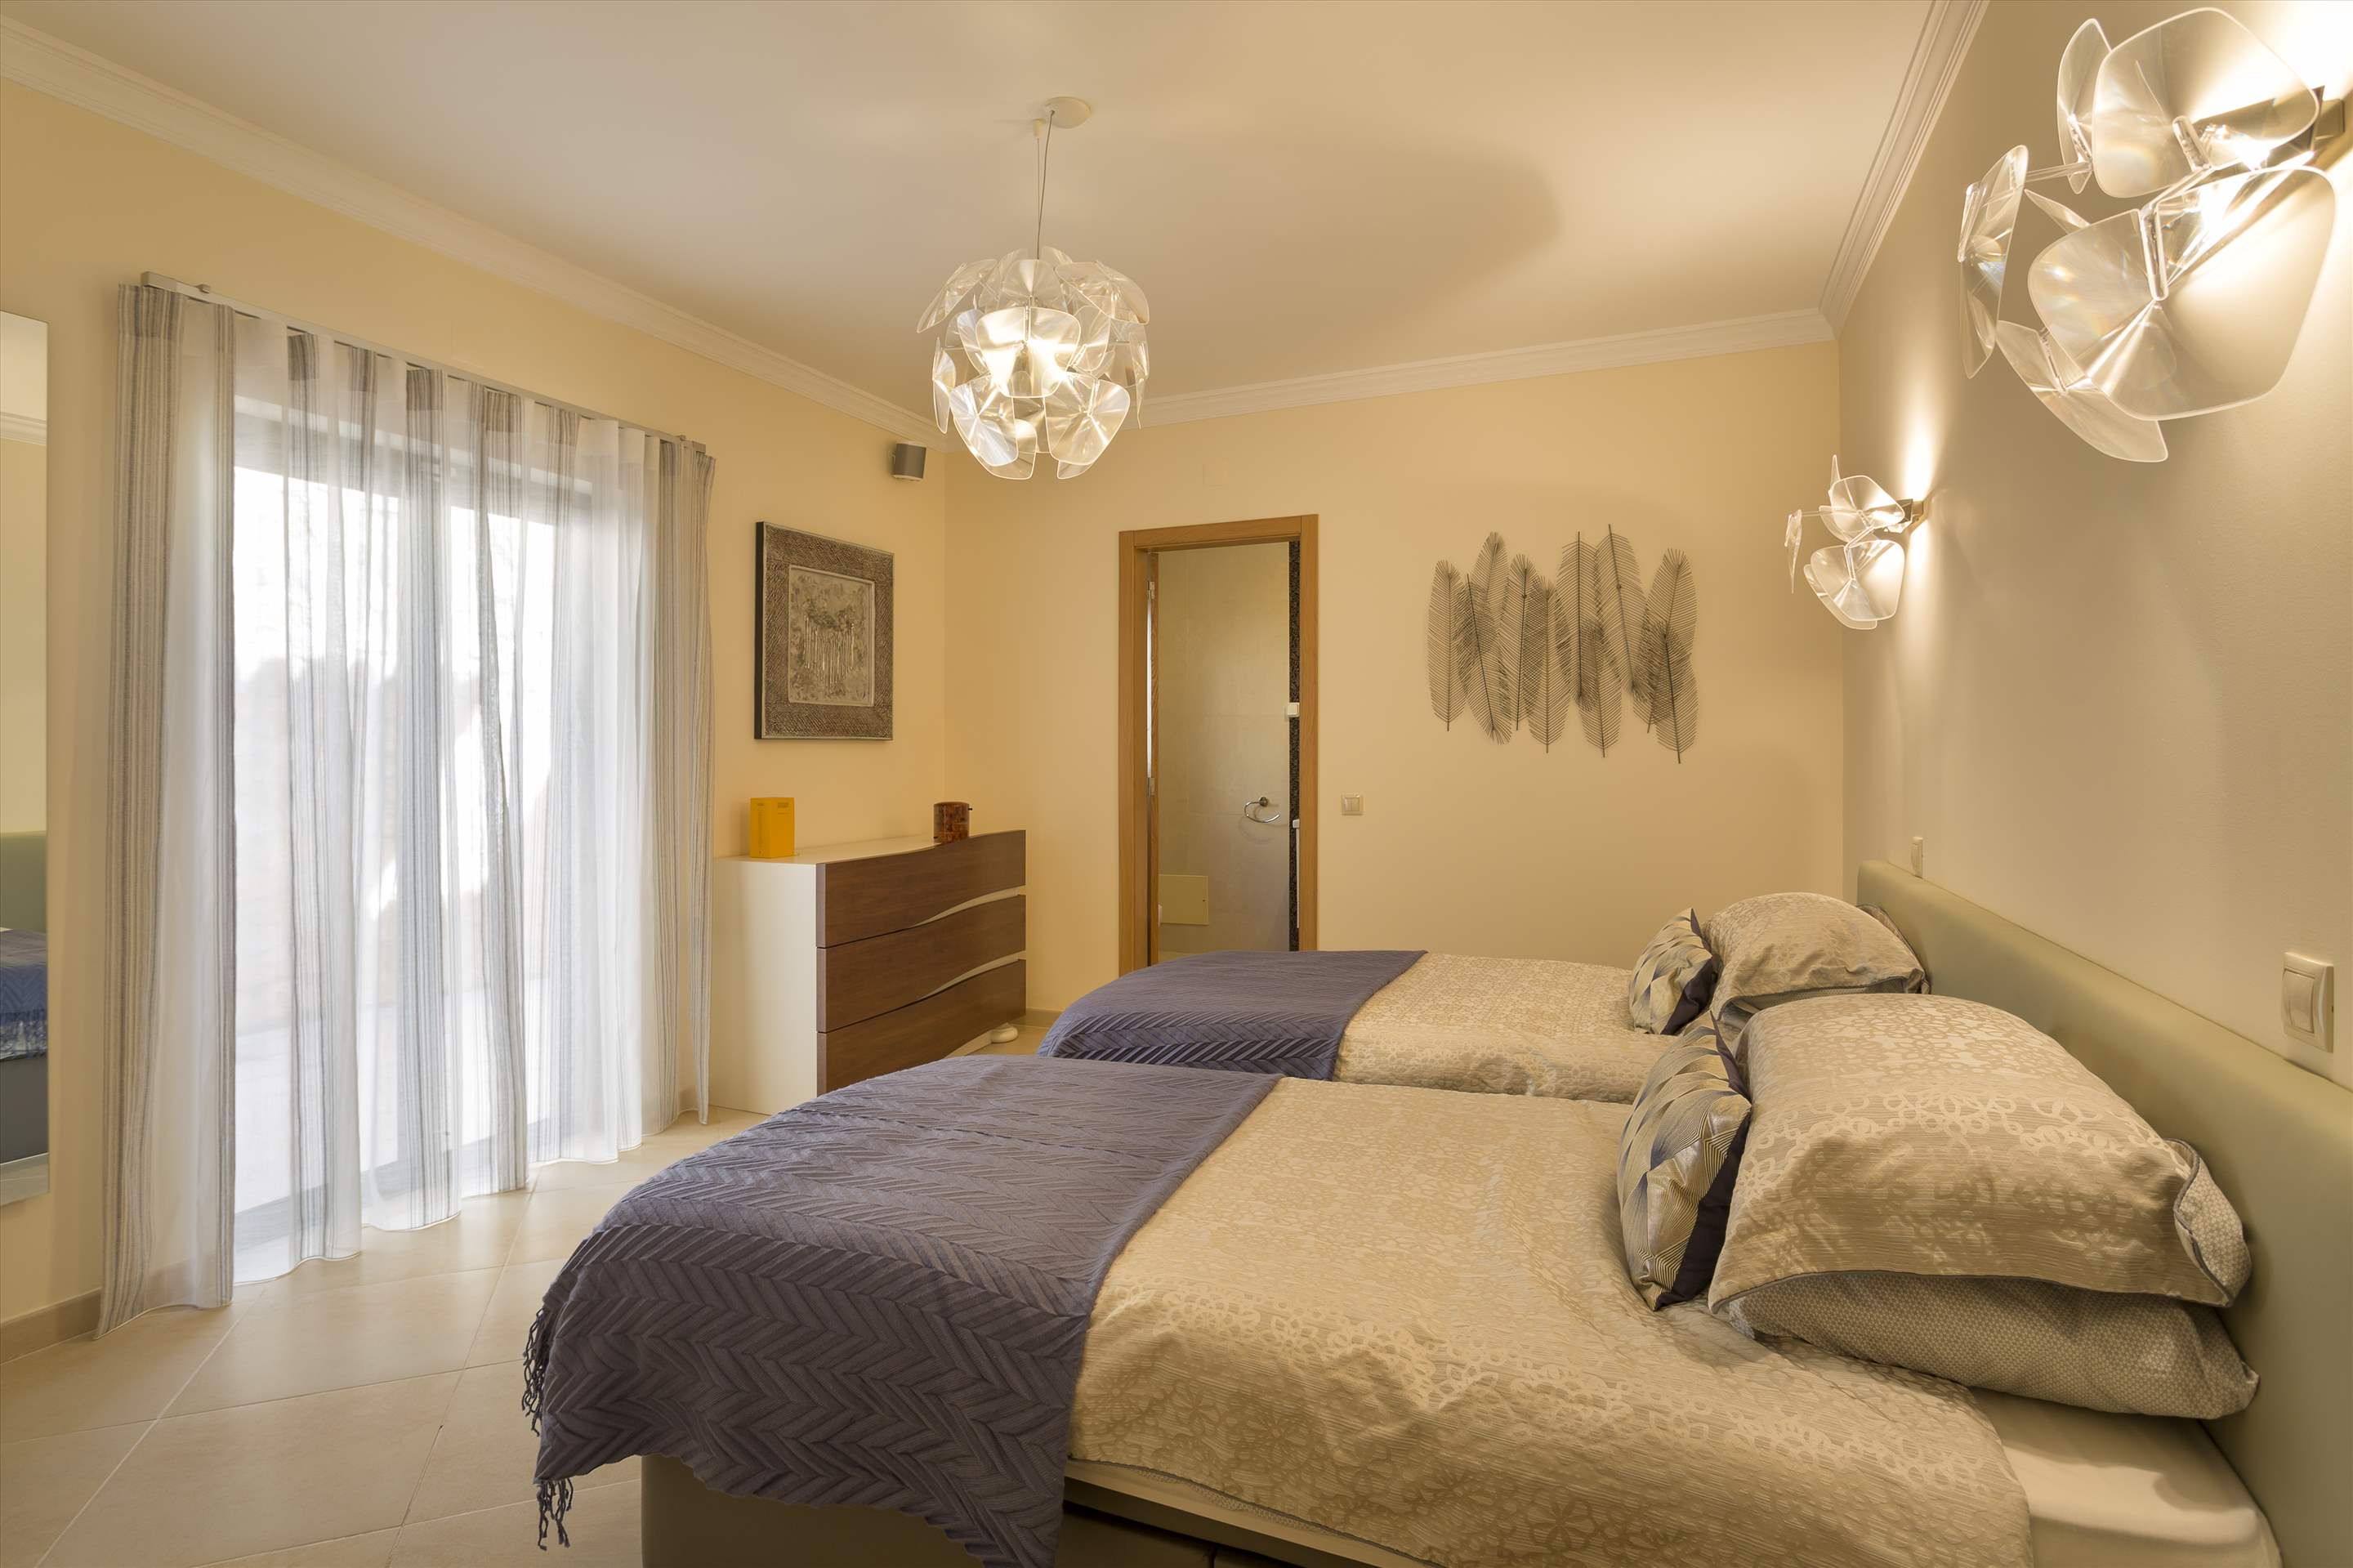 Casa da Pena Branca, Three bedroom, 6 Persons Occupancy, 3 bedroom villa in Algarve Countryside, Algarve Photo #19